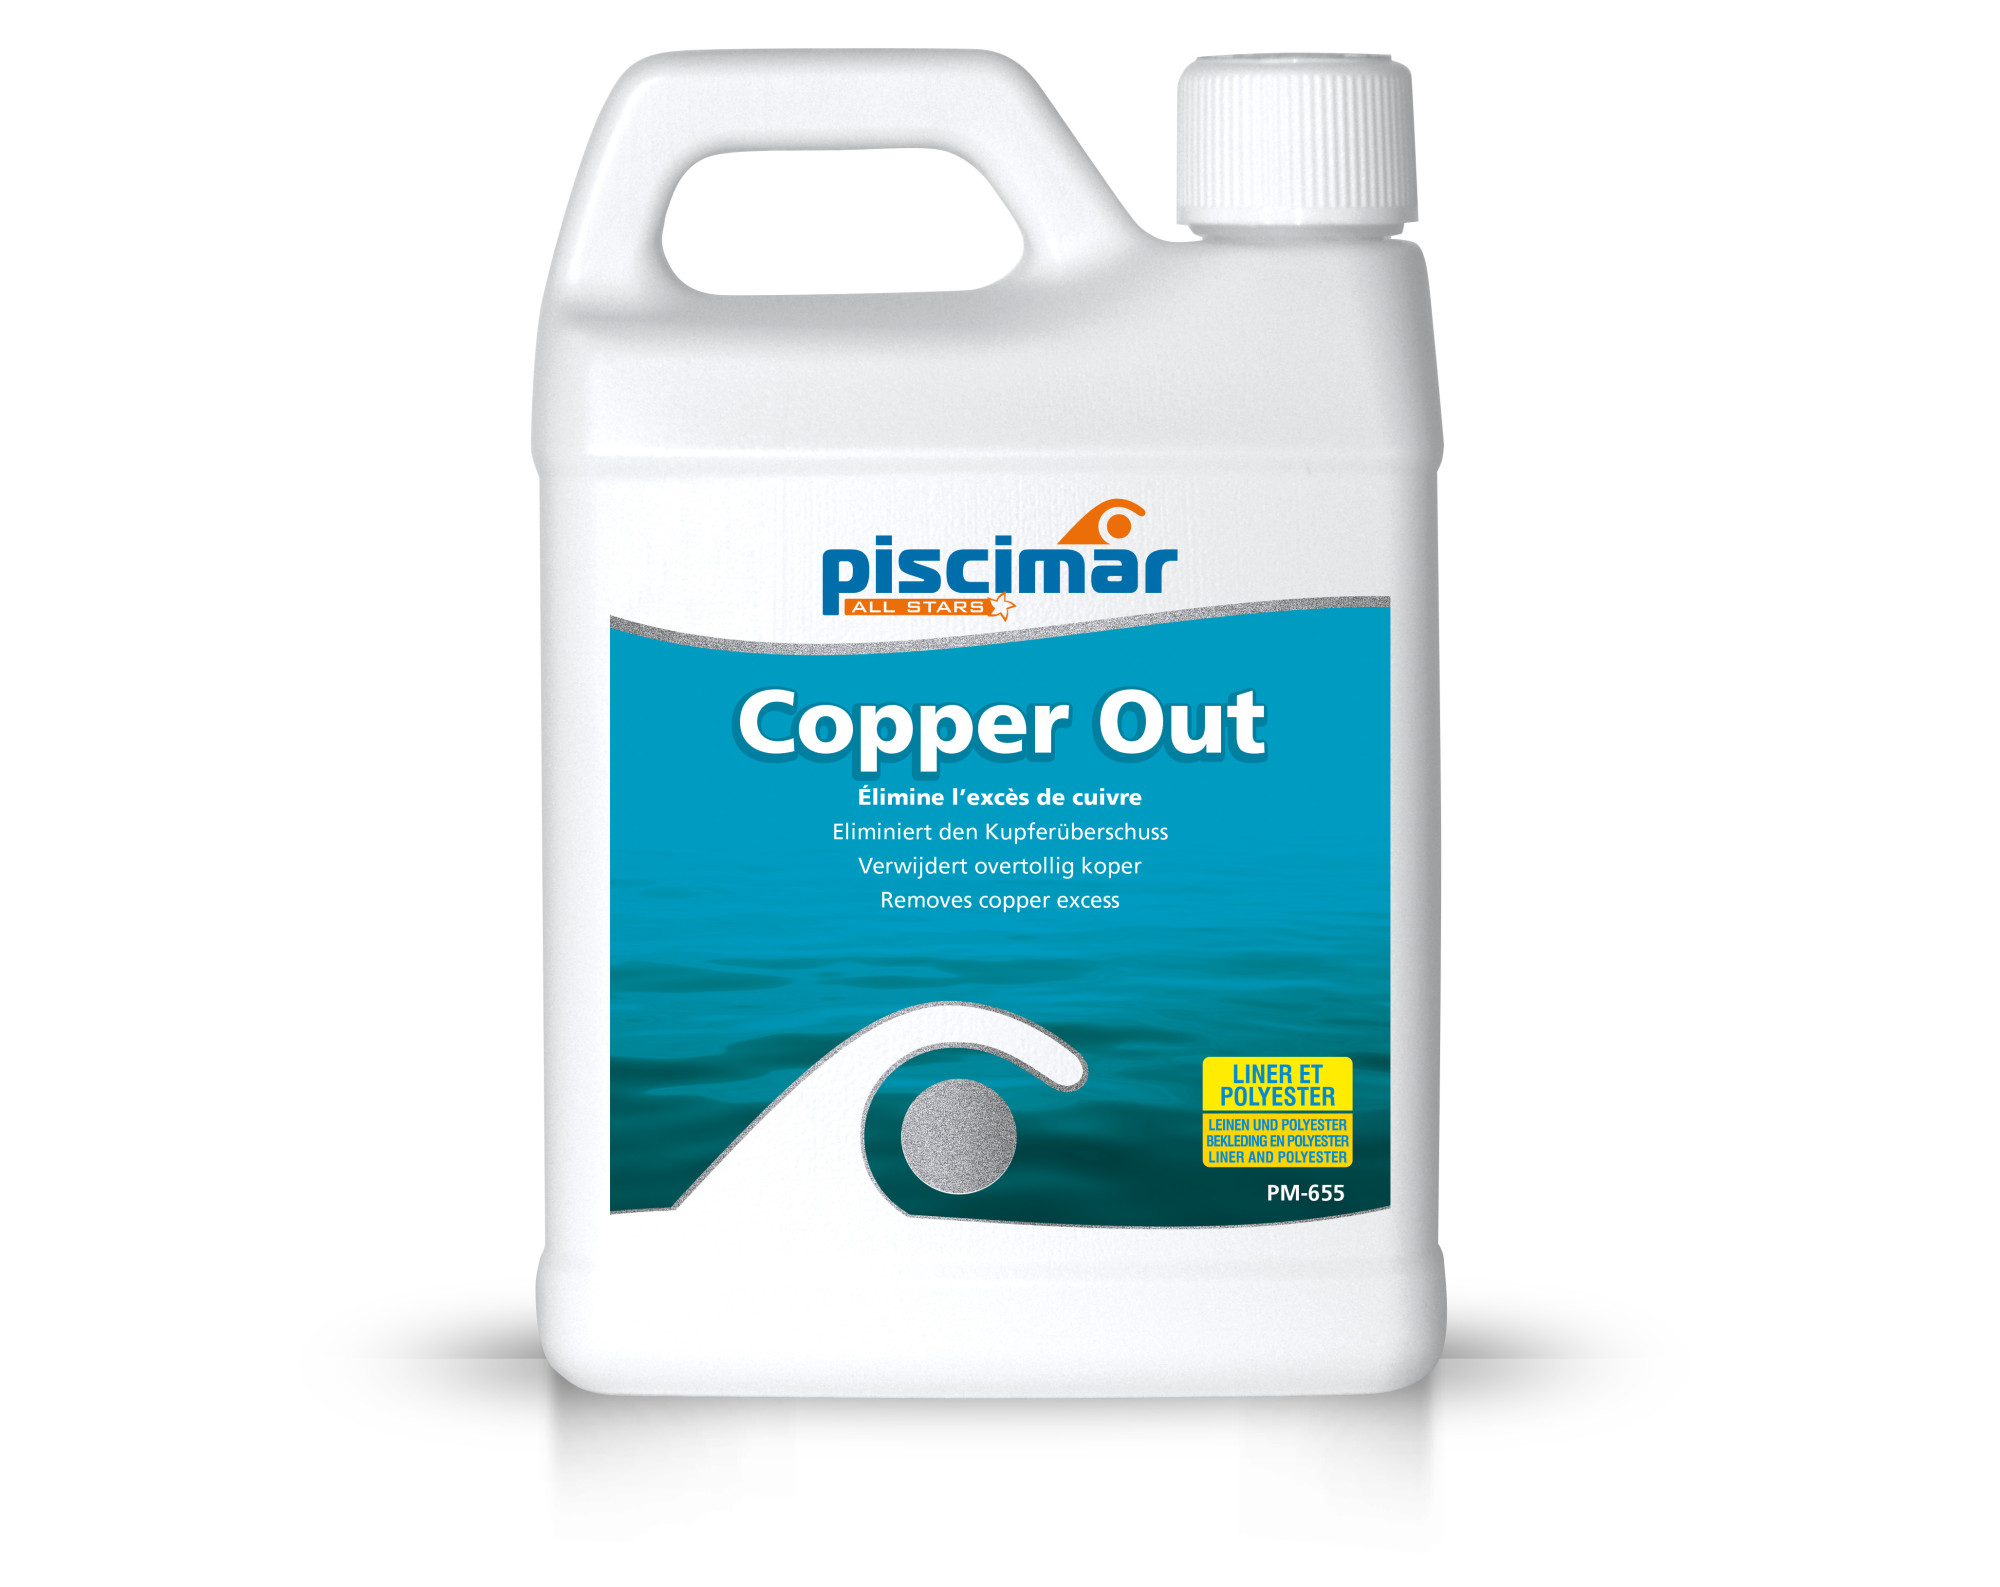 Piscimar Copper Out koper verwijderen (1L)